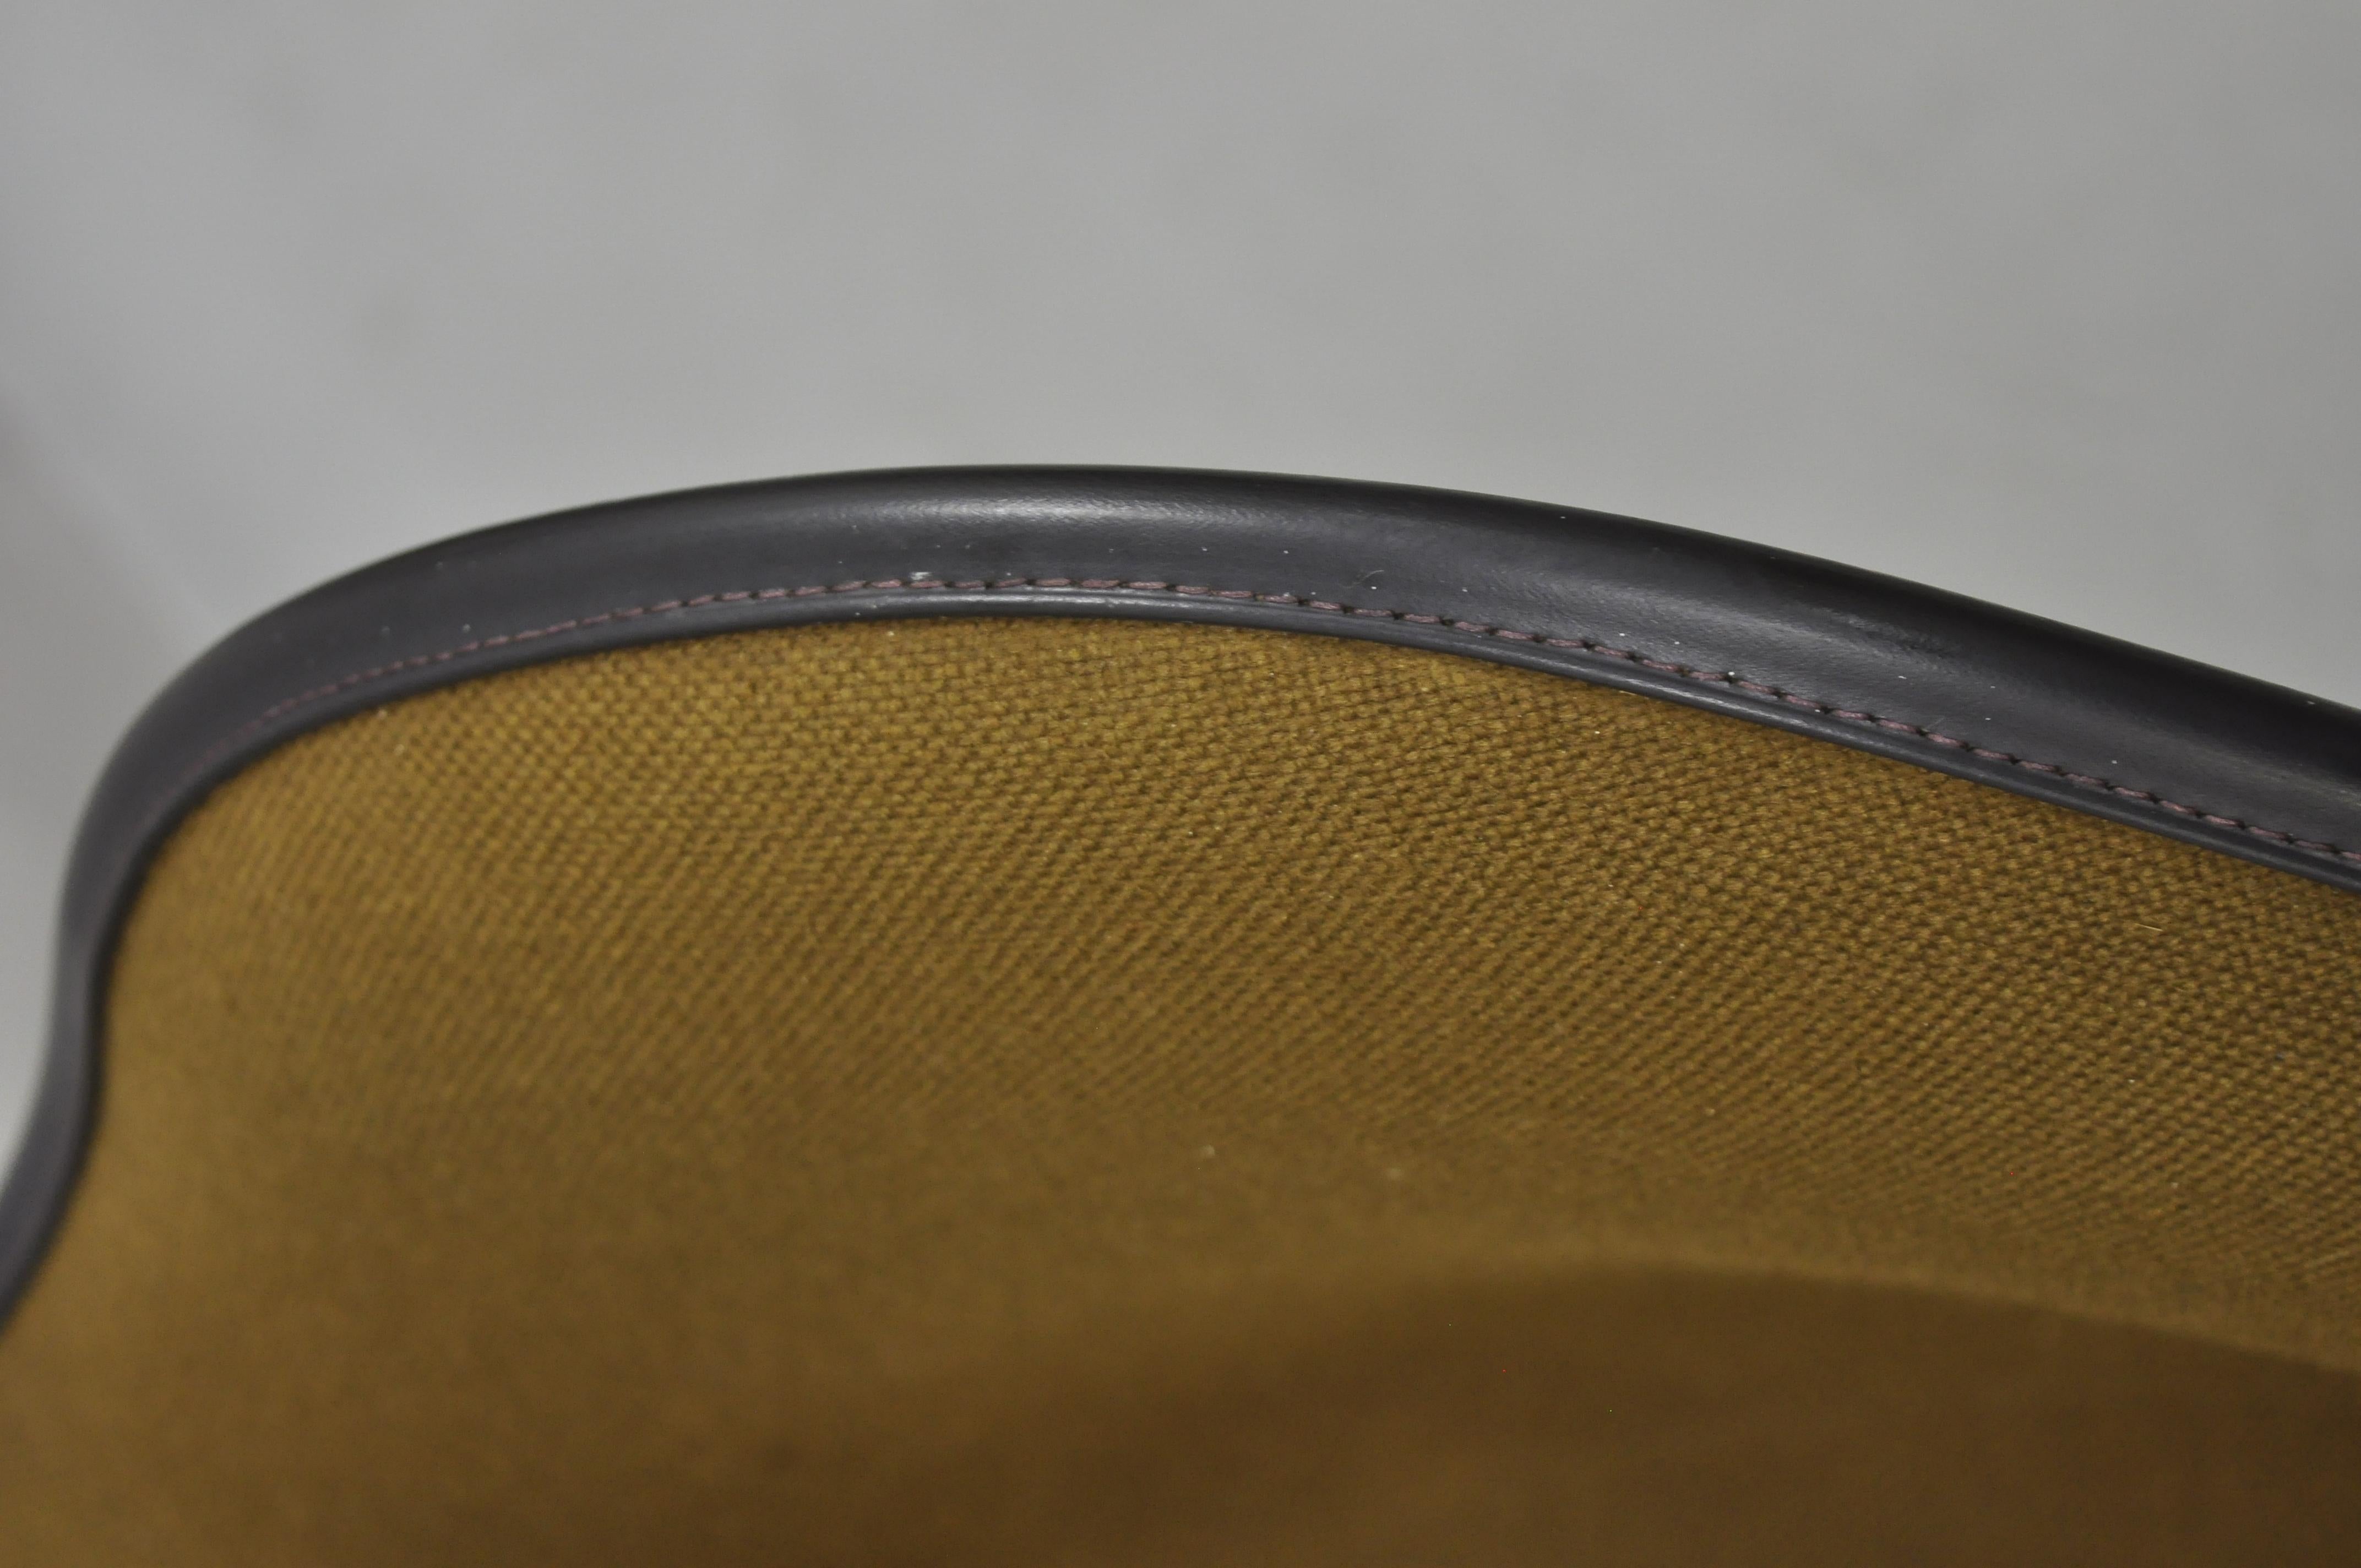 Metal Herman Miller Fiberglass Shell Upholstered Swivel Office Desk Chair on Wheels